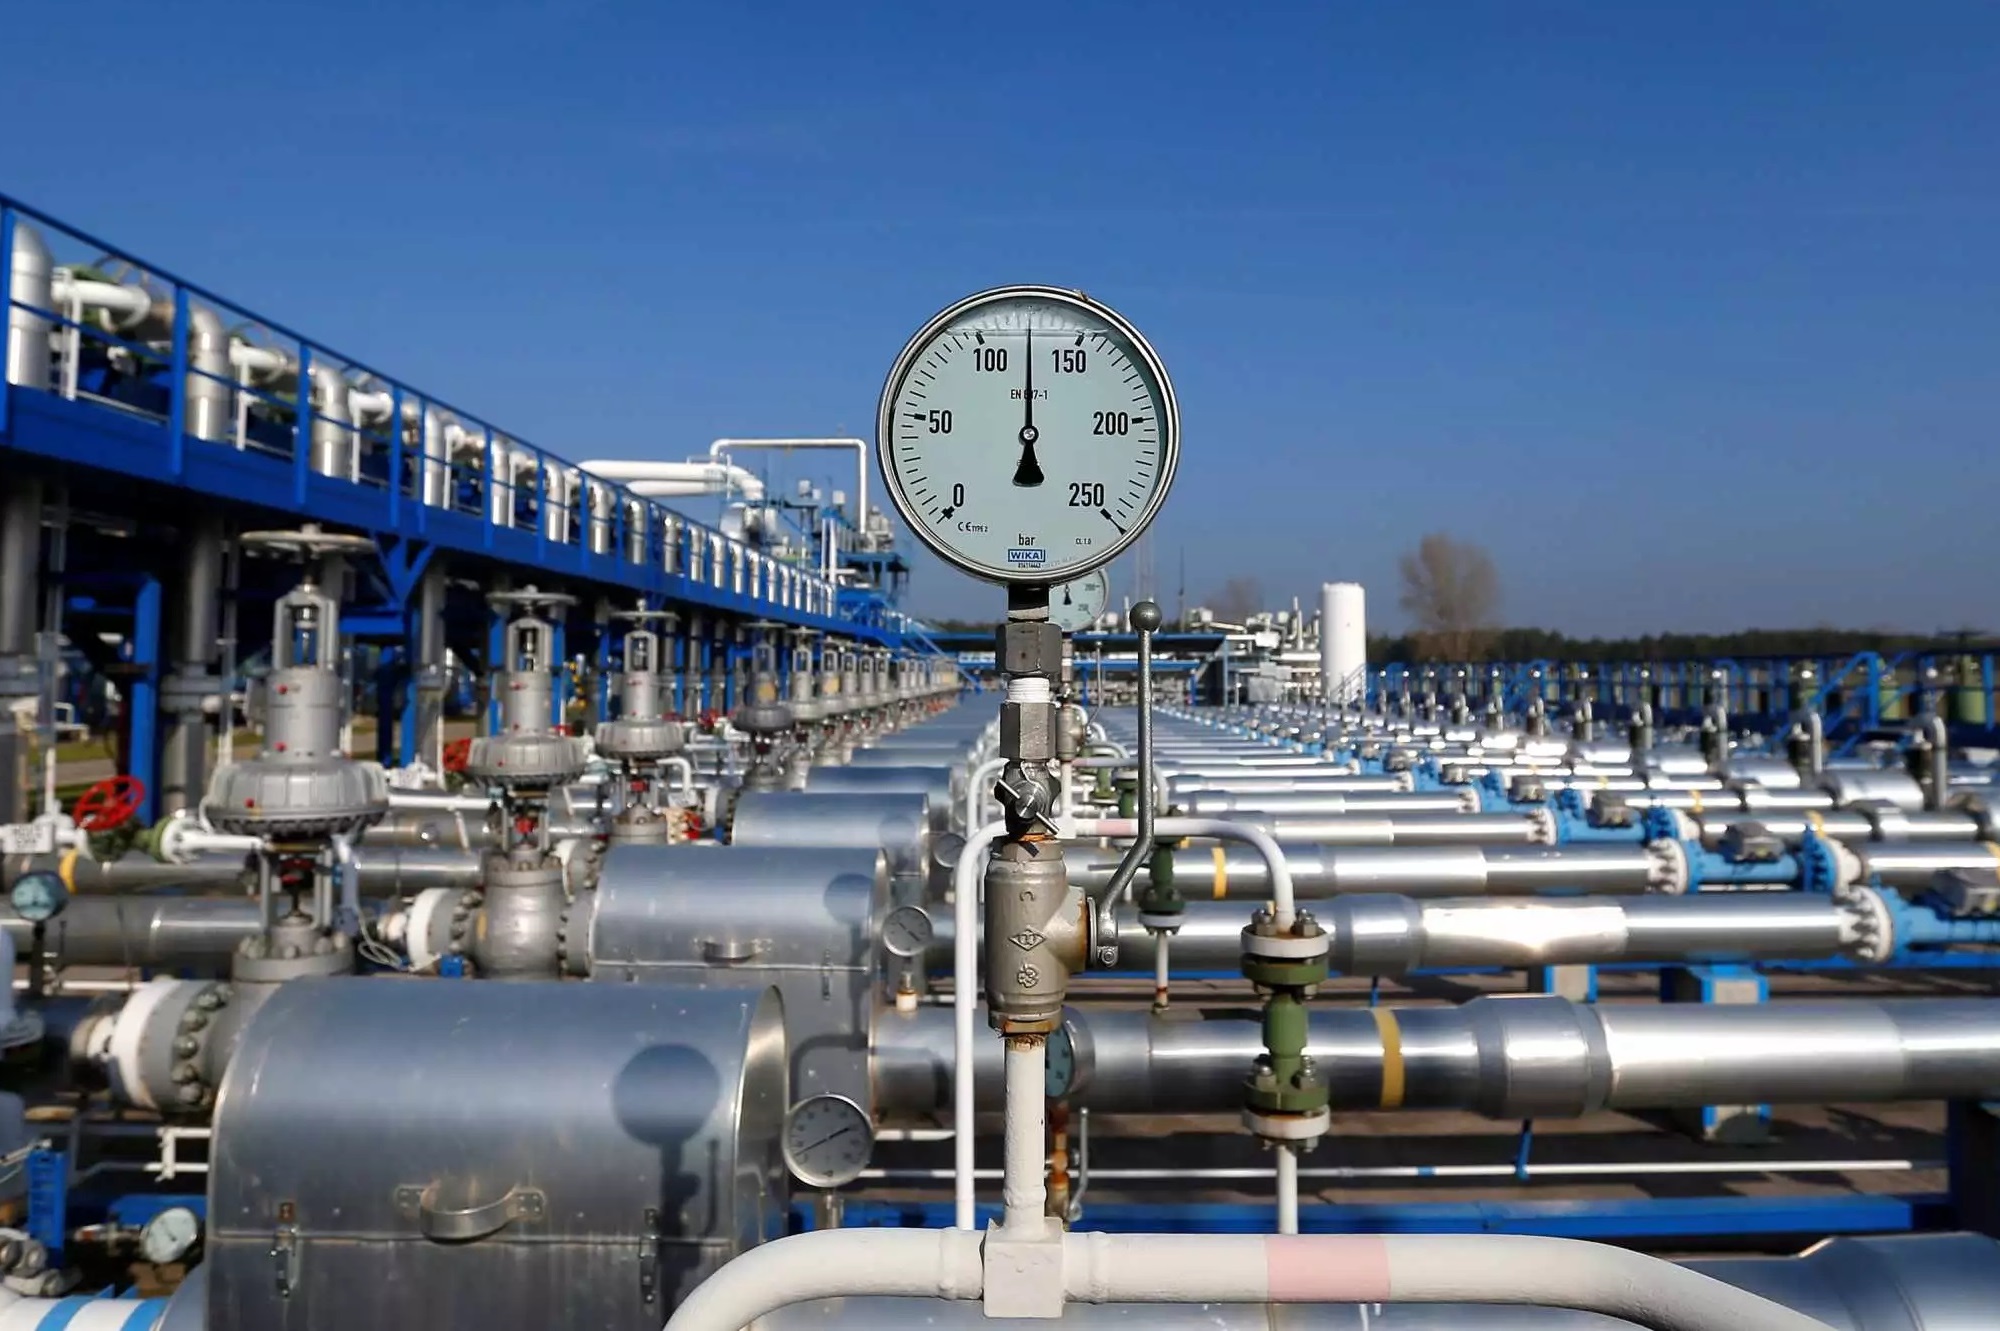 Σαρλ Μισέλ: Δραστικότερα μέτρα για την αντιμετώπιση της αύξησης των τιμών του φυσικού αερίου